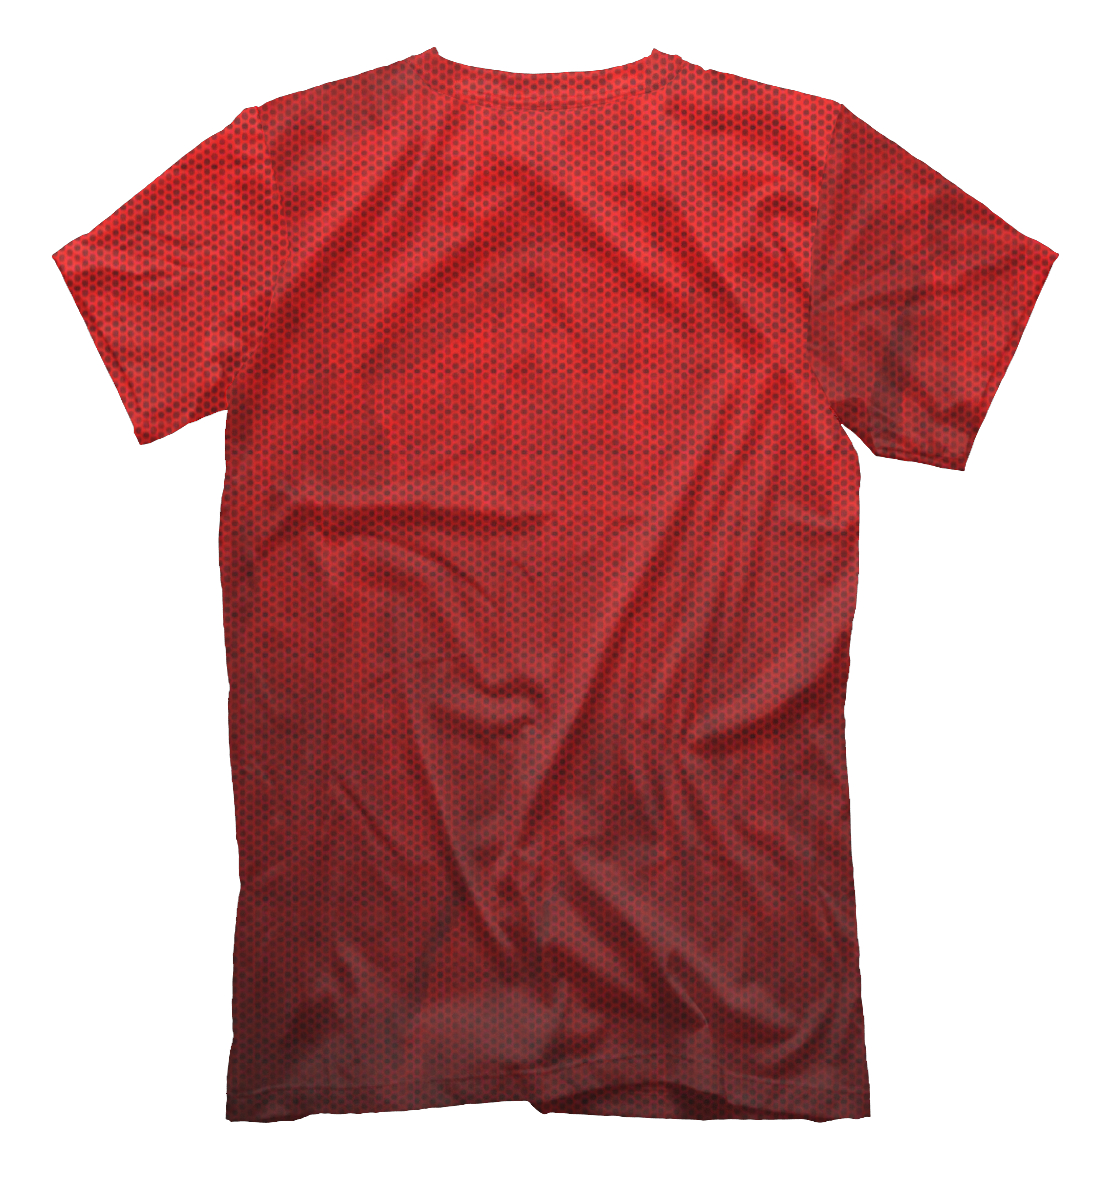 Мужская футболка с принтом Liverpool / Ливерпуль  - фото 2-спина